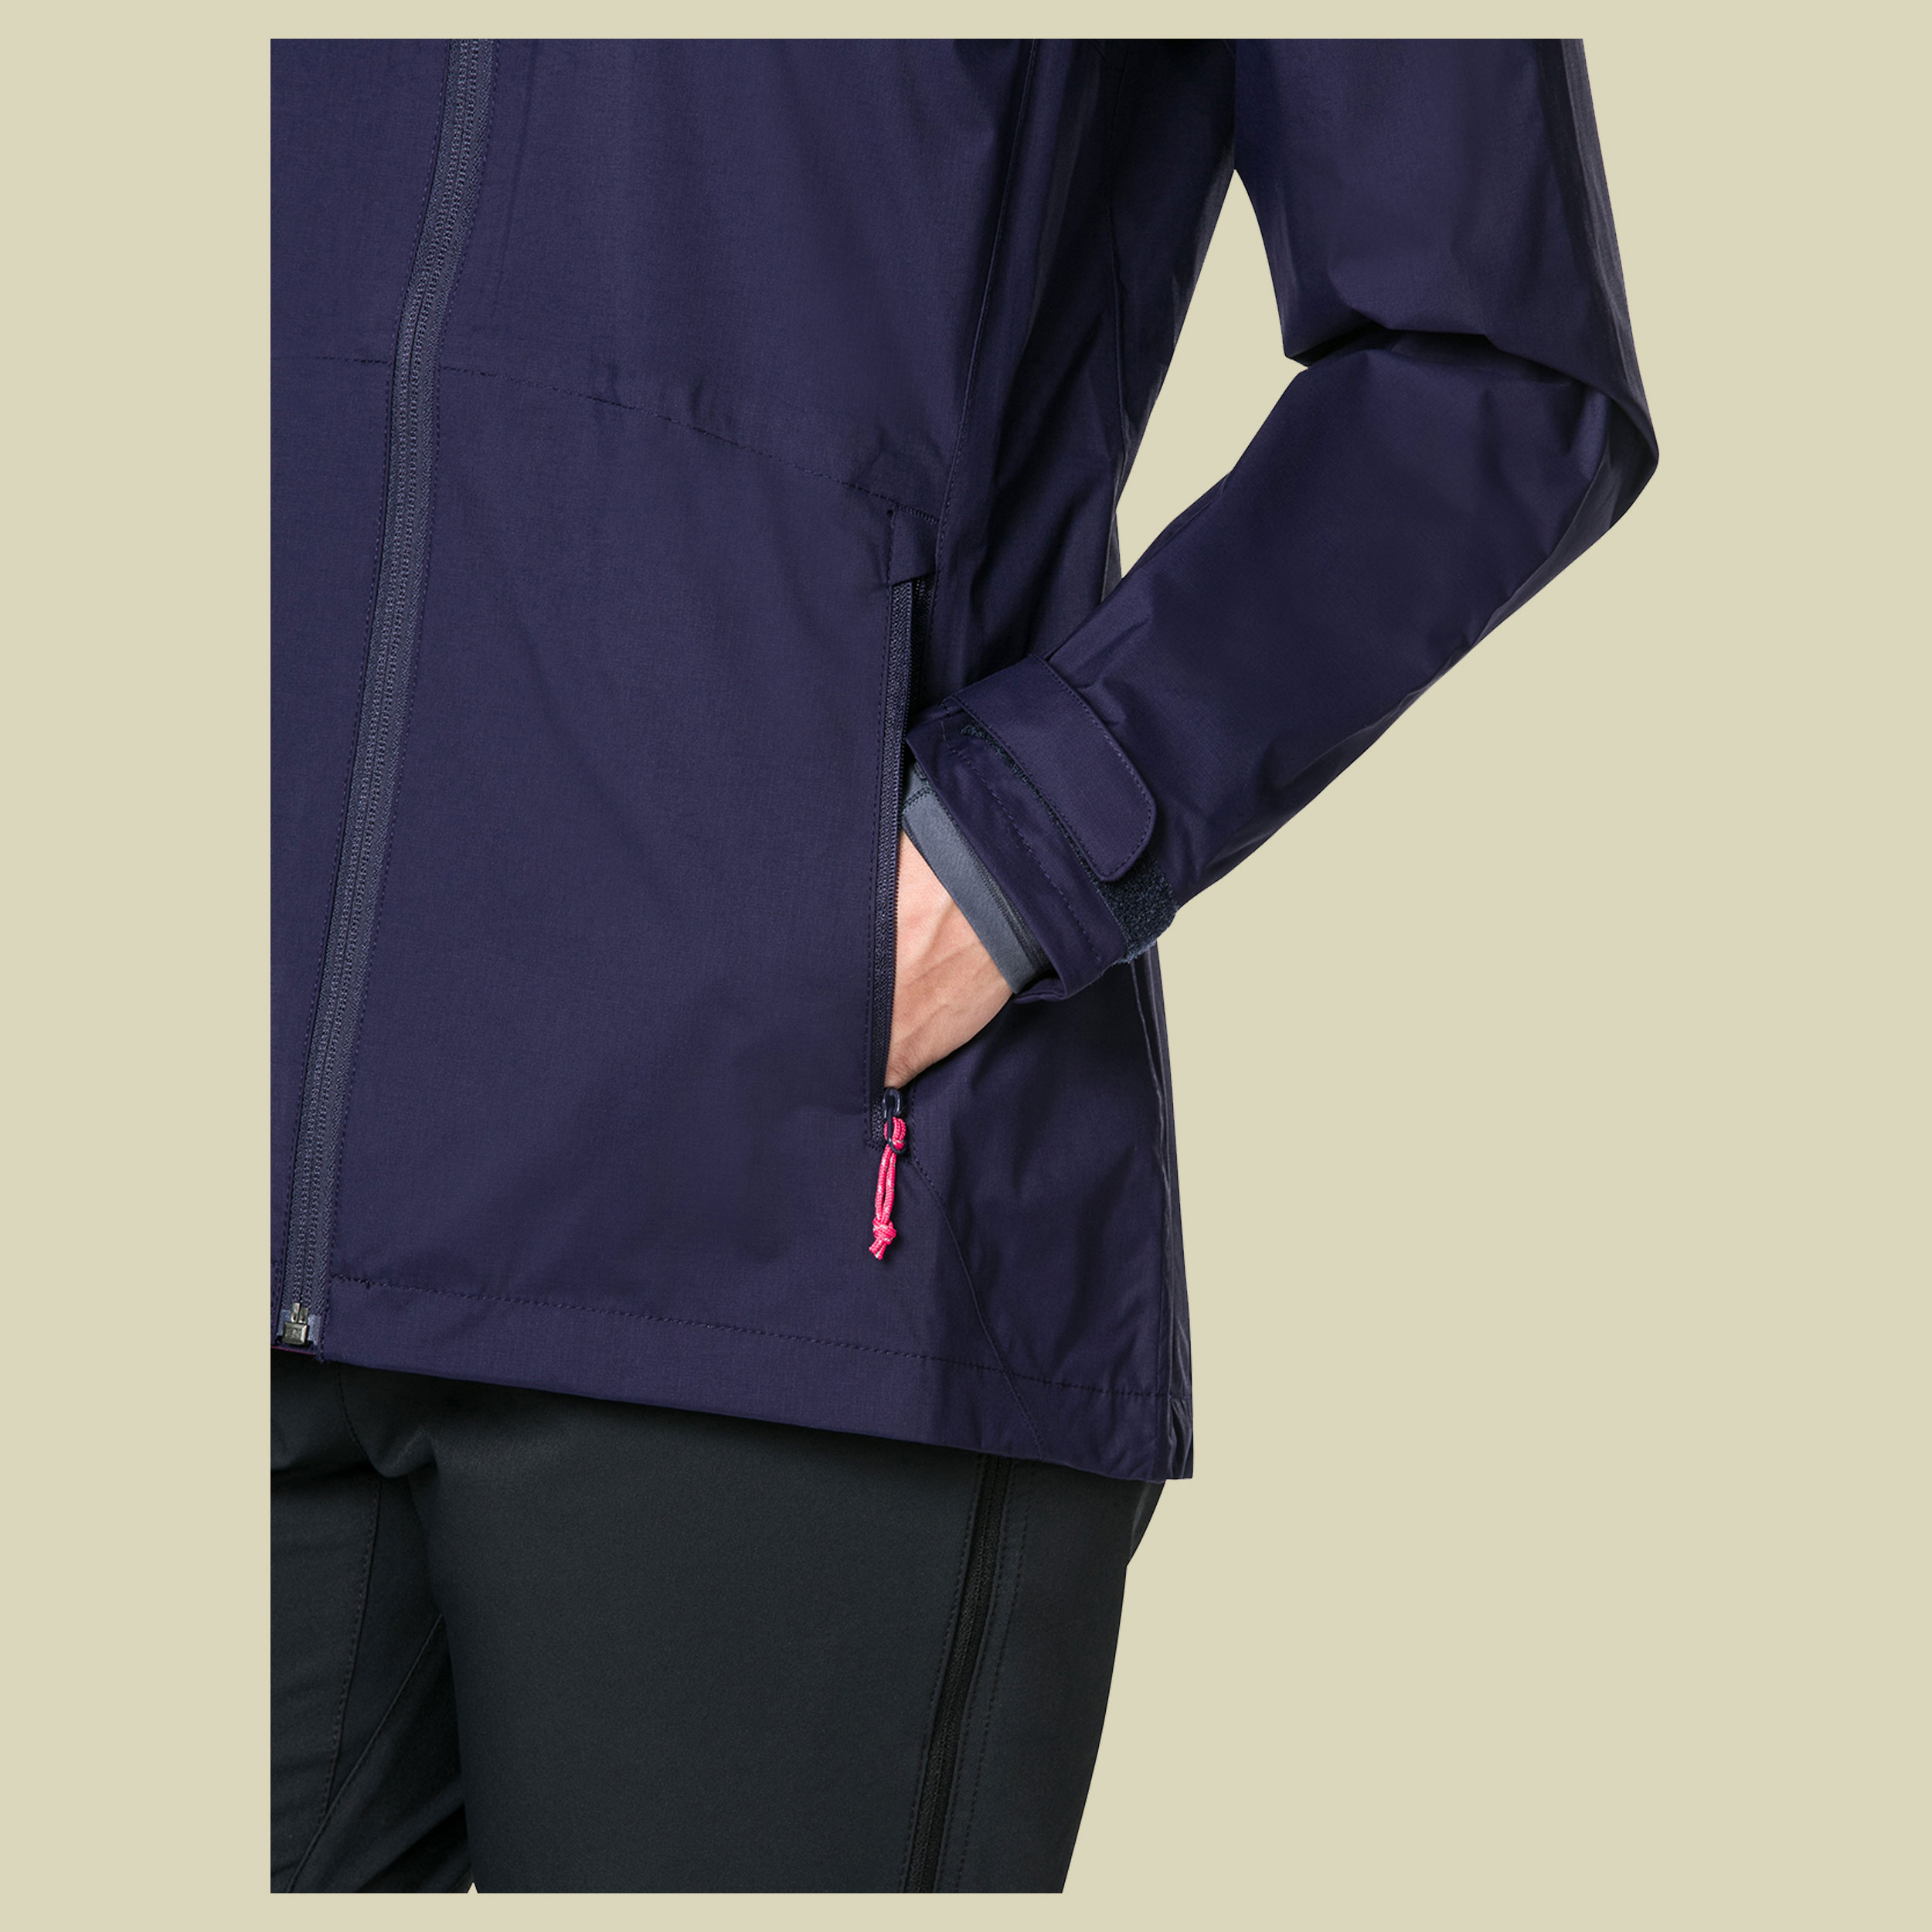 Deluge Pro Shell Jacket Women Größe 44 (18) Farbe evening blue